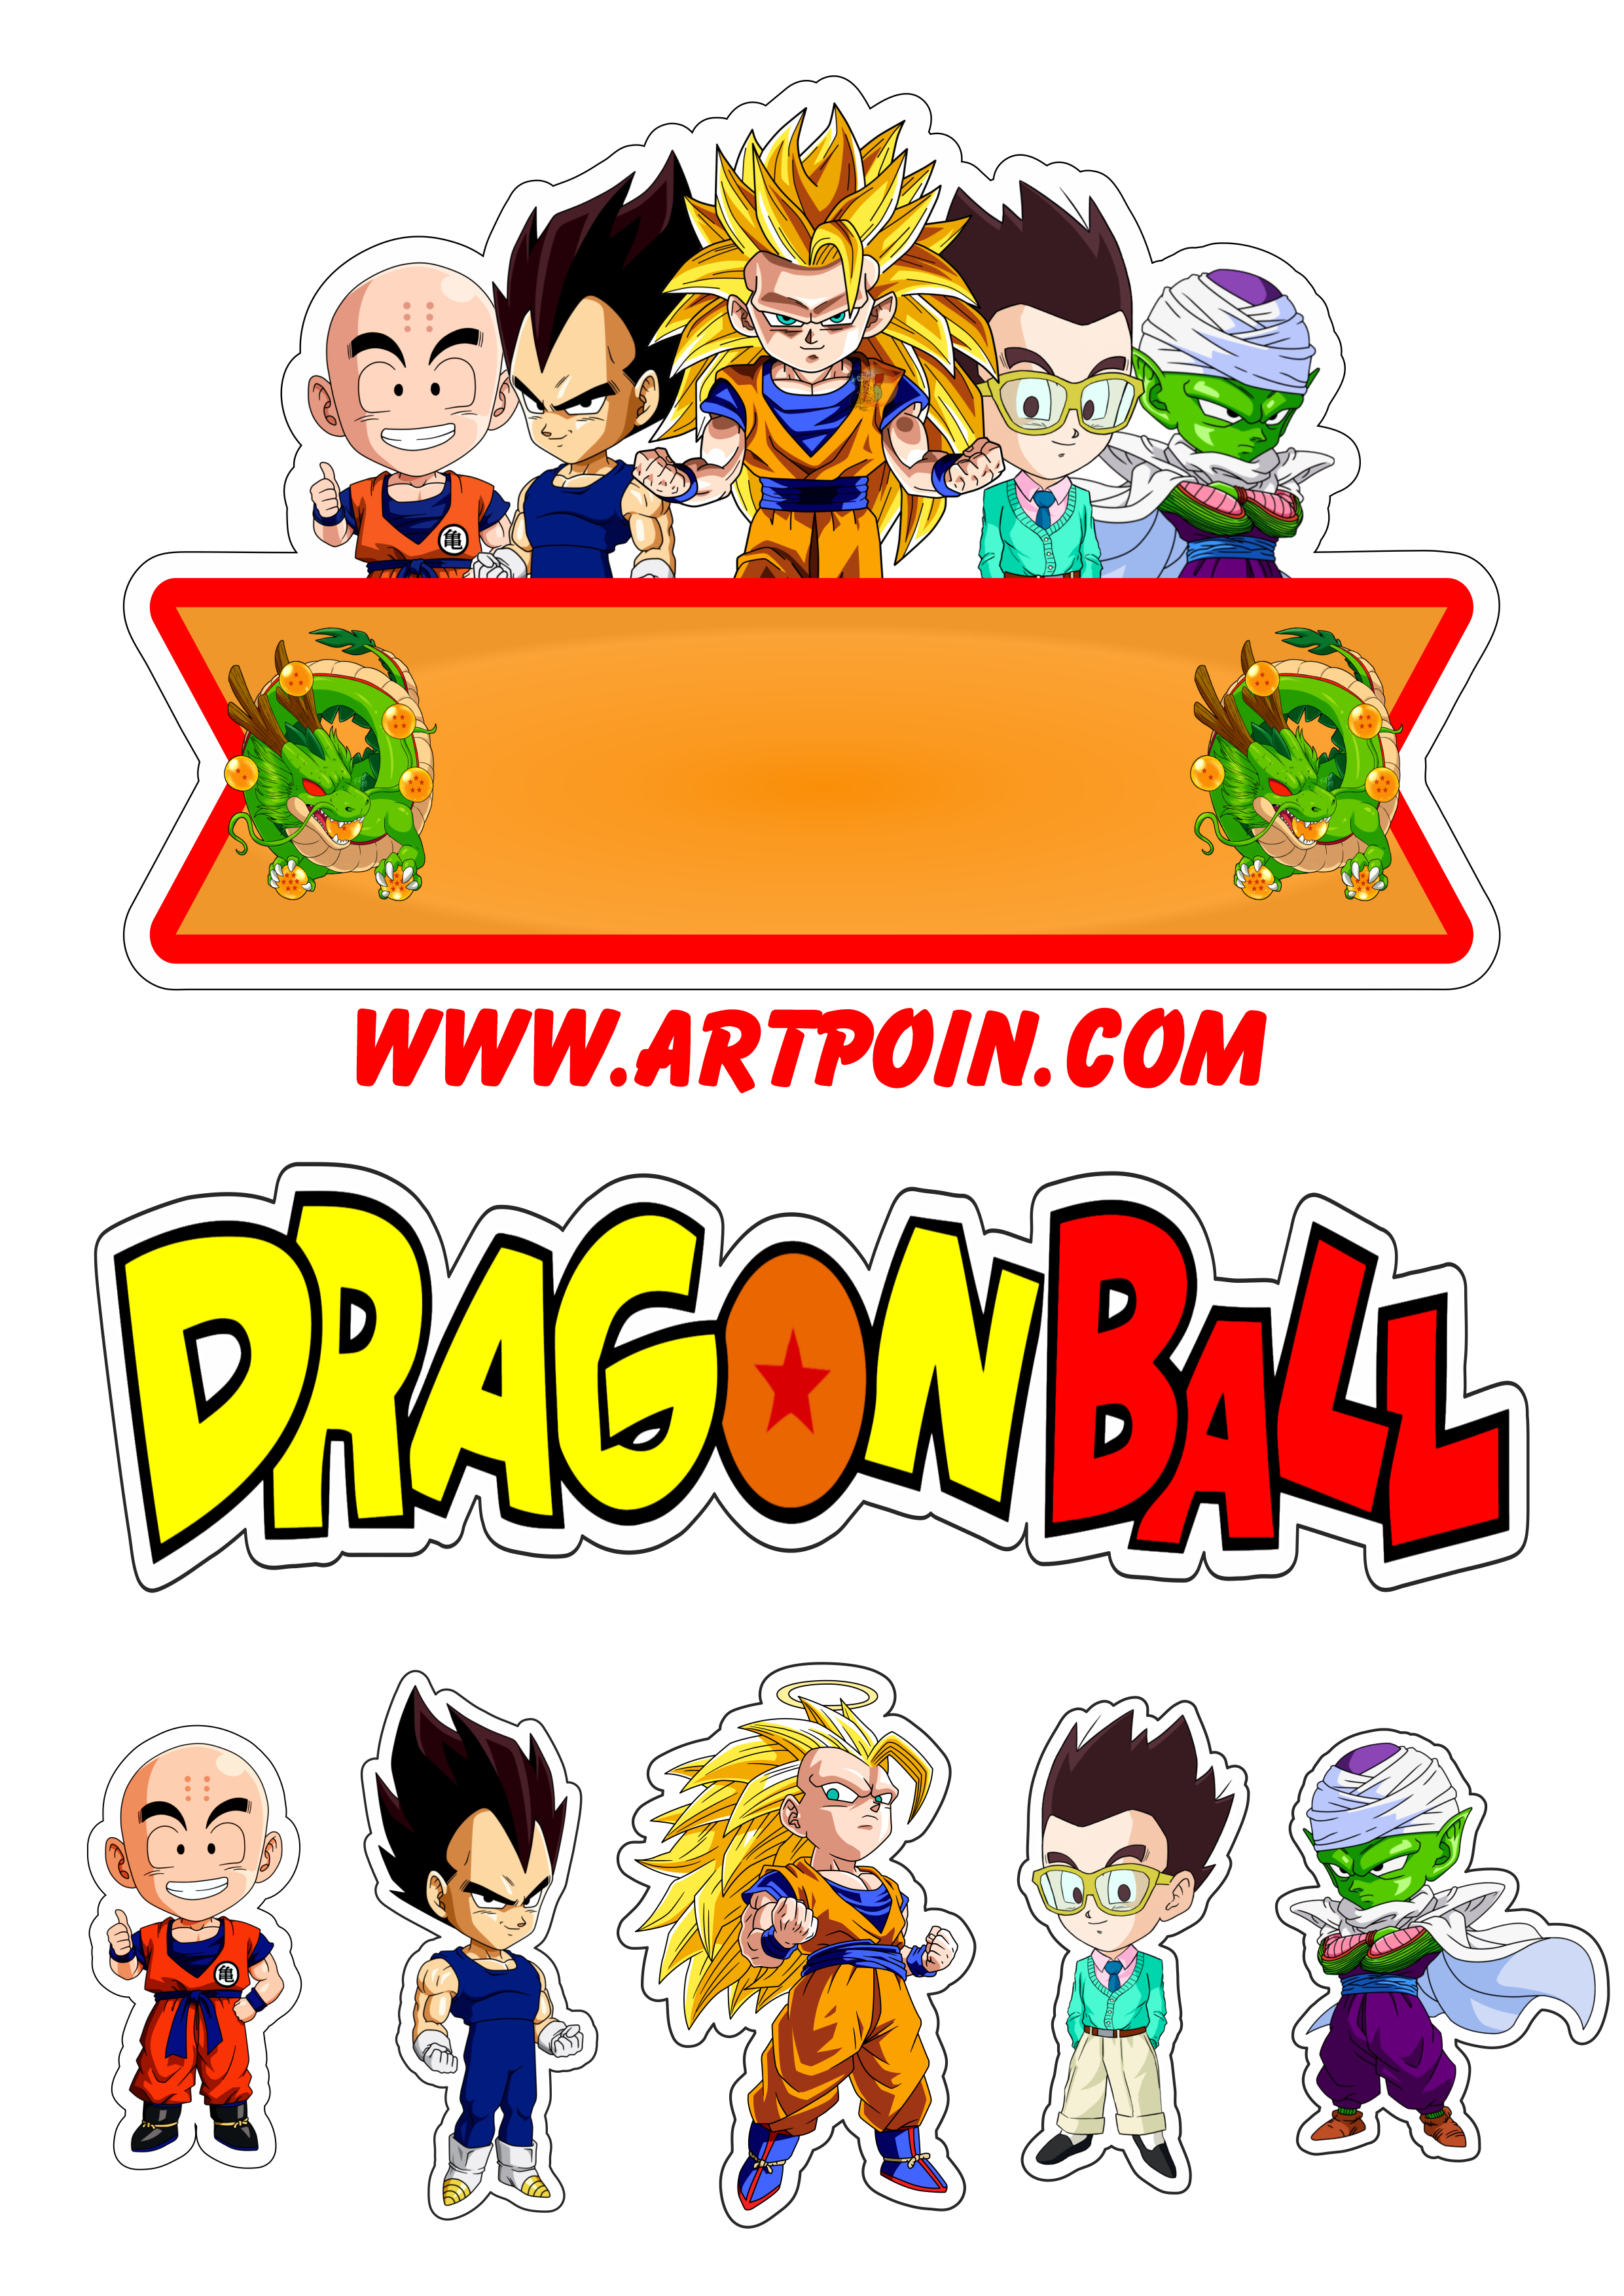 Dragon ball Z topo de bolo festa de aniversário infantil Goku Vegeta Gohan Piccolo kuririn personagens artigos de papelaria png